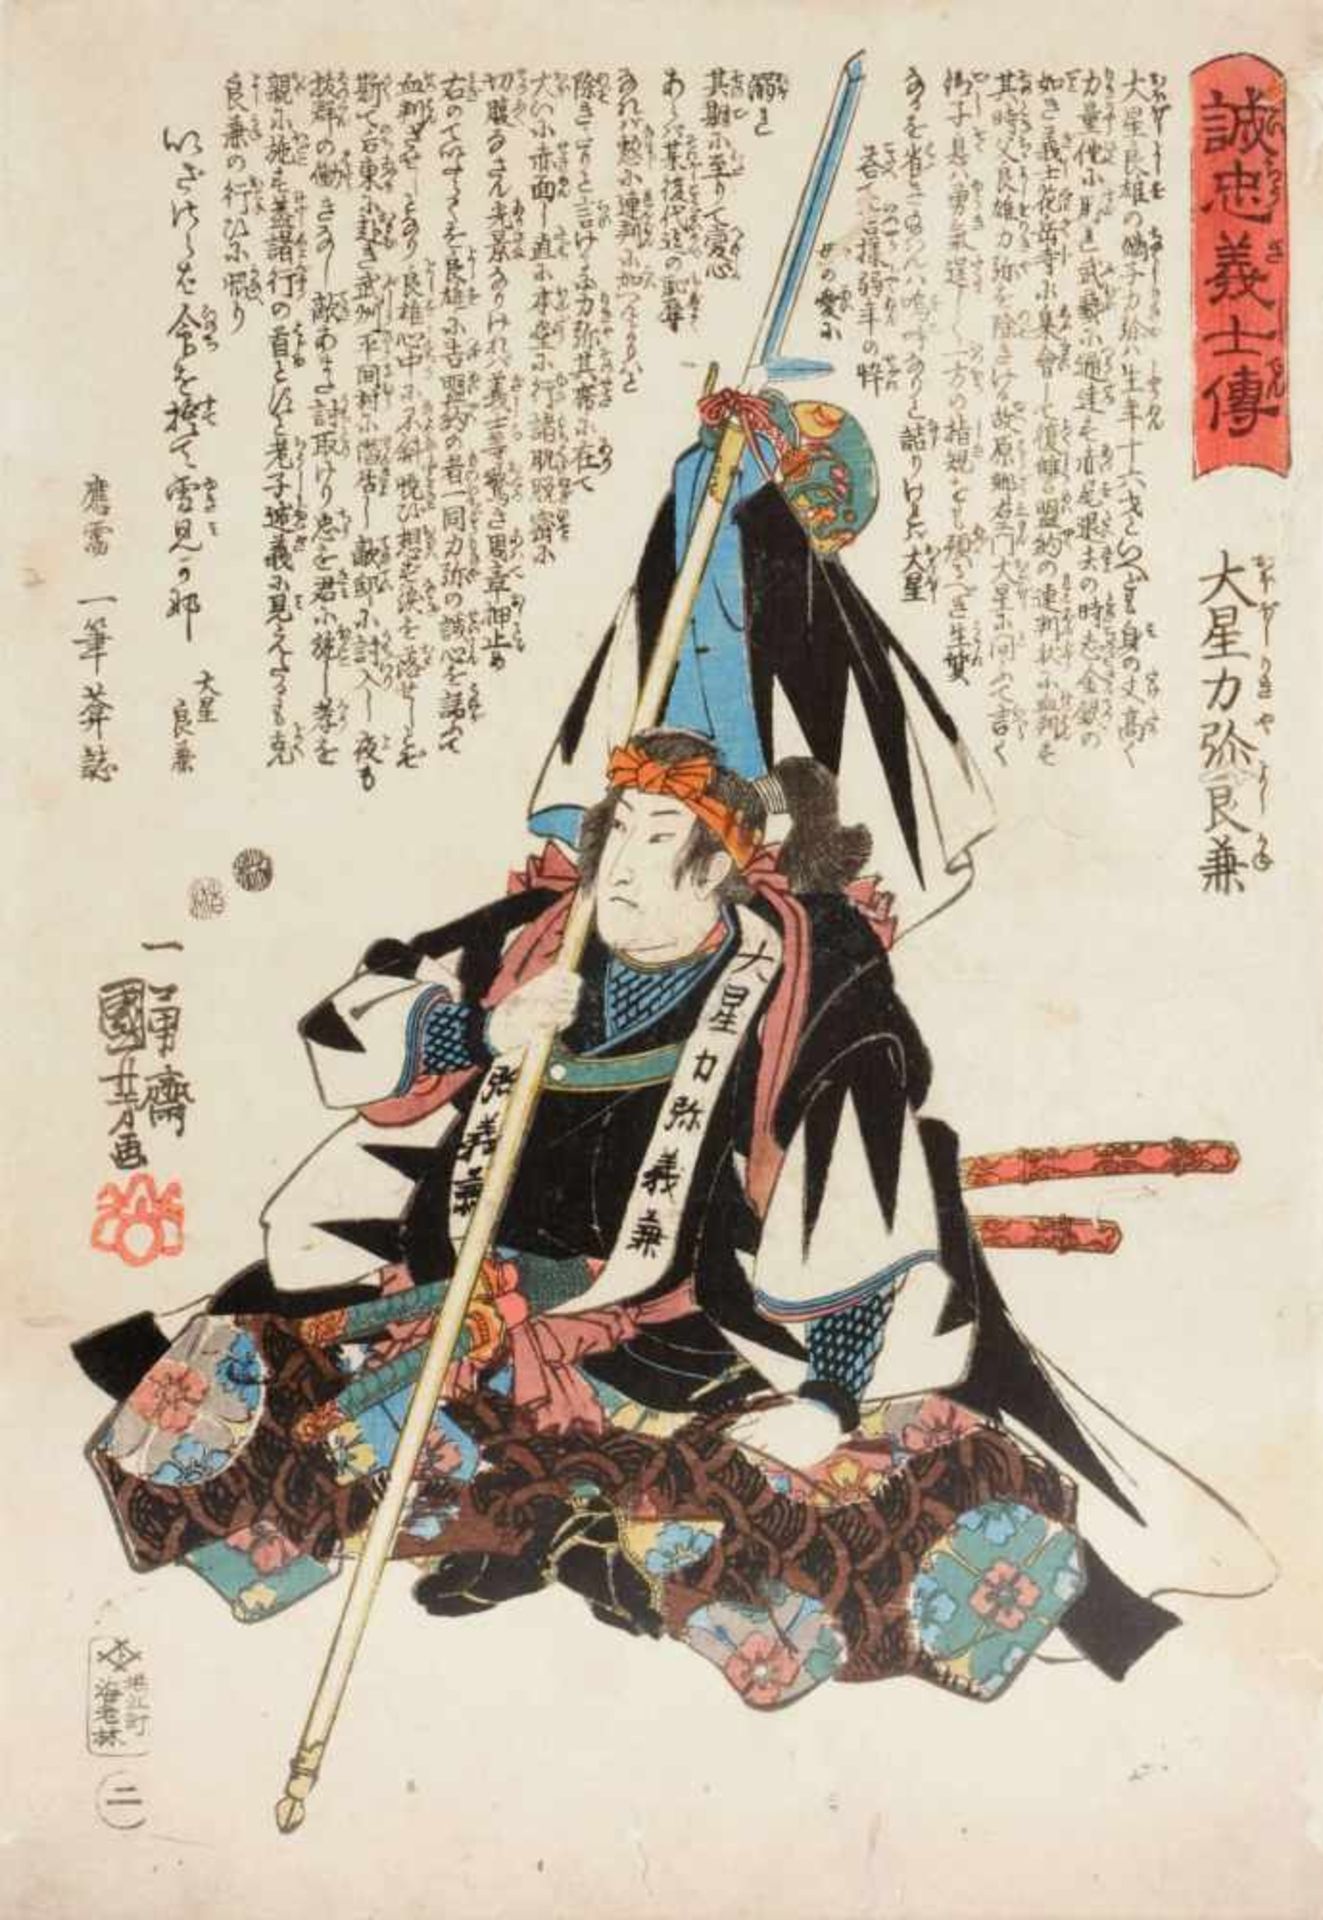 Utagawa Kuniyoshi "Ôboshi Rikiya Yoshikane" (Samurai, Helm und Umhang an seinem Stab hängend).